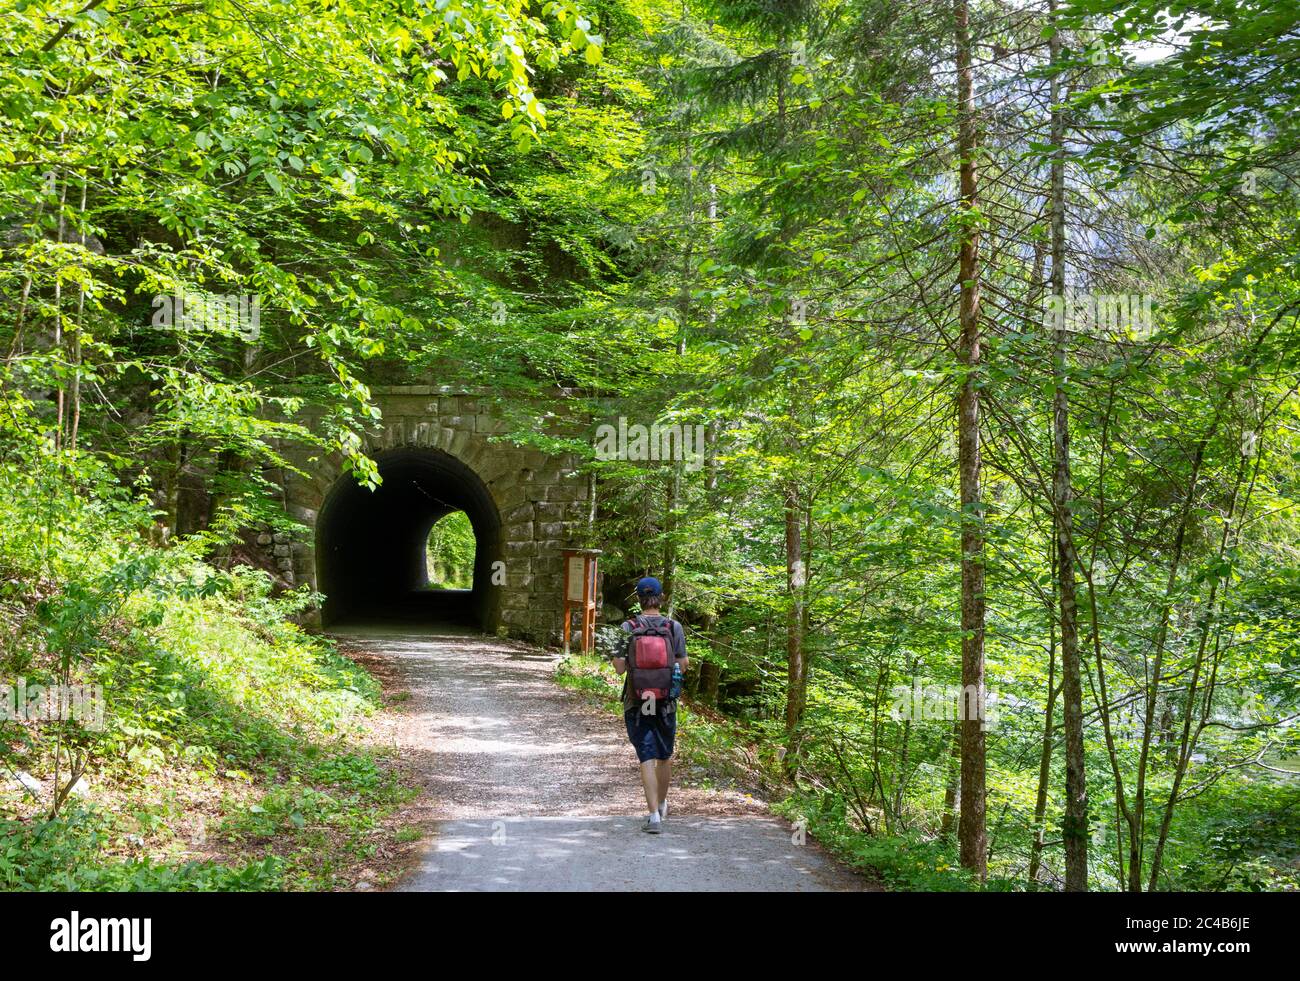 Sentier de randonnée Koppental d'Obertraun à Bad Aussee, rivière Koppentraun, tunnel ferroviaire de l'ancienne route, Salzkammergut, haute-Autriche, Autriche Banque D'Images